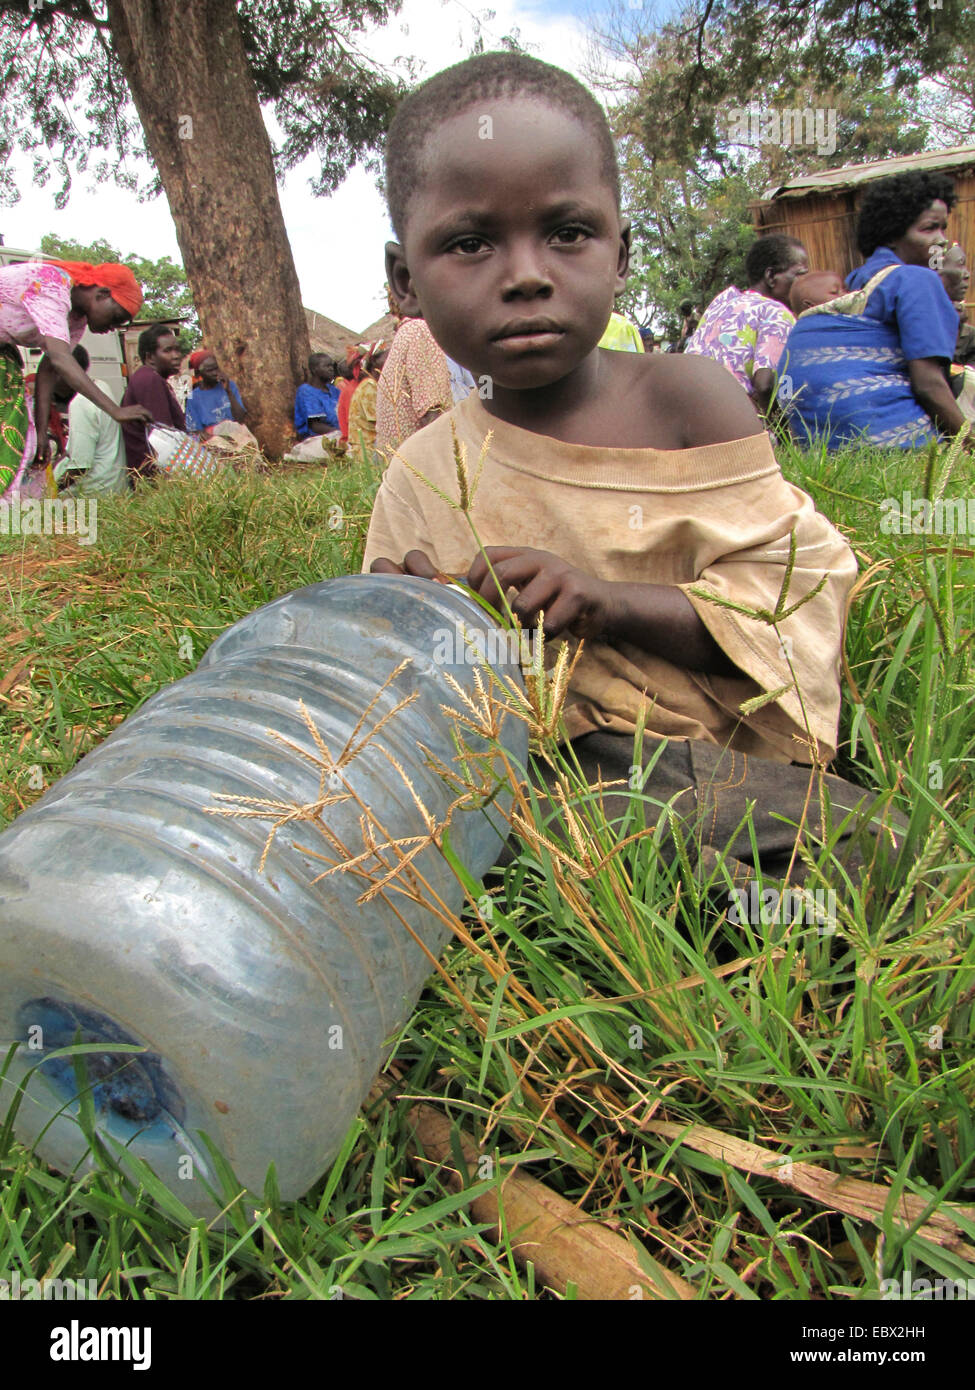 Camp de réfugiés pour les personnes déplacées dans le nord de l'Ouganda autour de Gulu, simple maison de terre en arrière-plan, garçon avec bouteille de plastique est en attente pour l'eau, de l'Ouganda, Gulu Banque D'Images